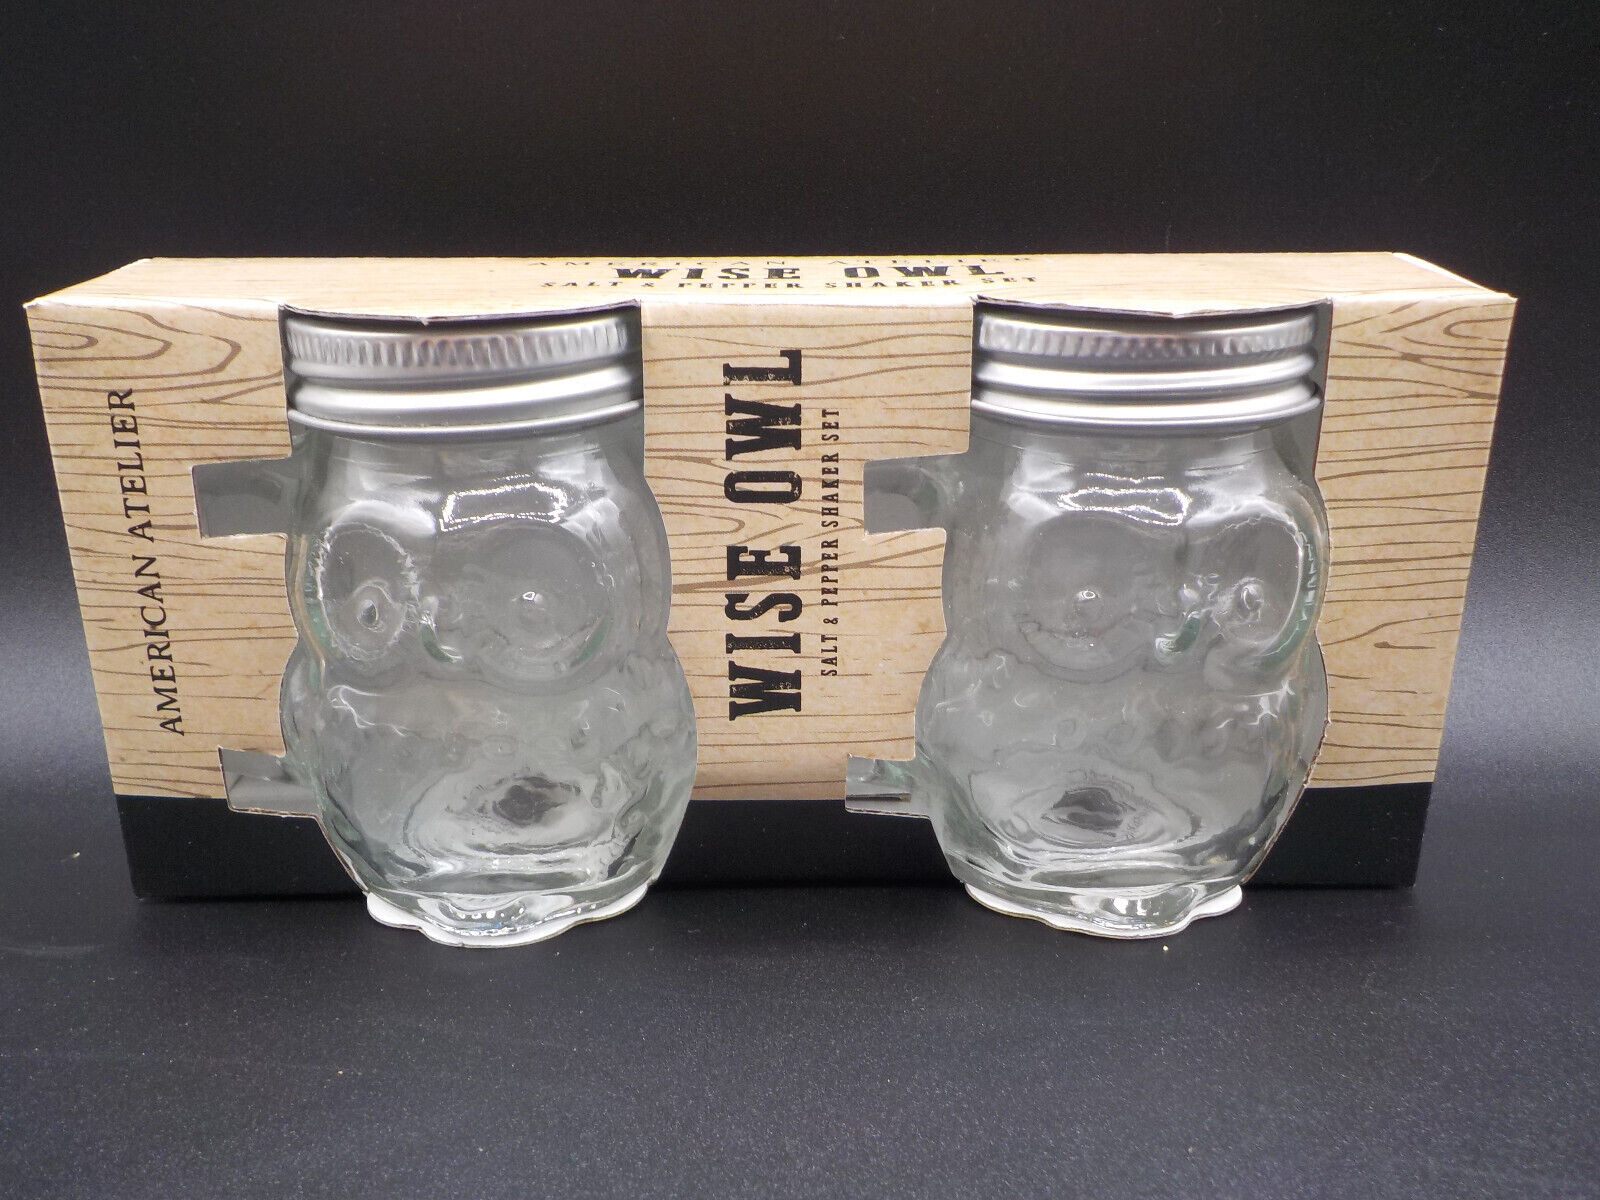 AMERICAN ATELIER Wise Owl Salt & Pepper Shaker Set Clear Jar Handled Metal Lid 